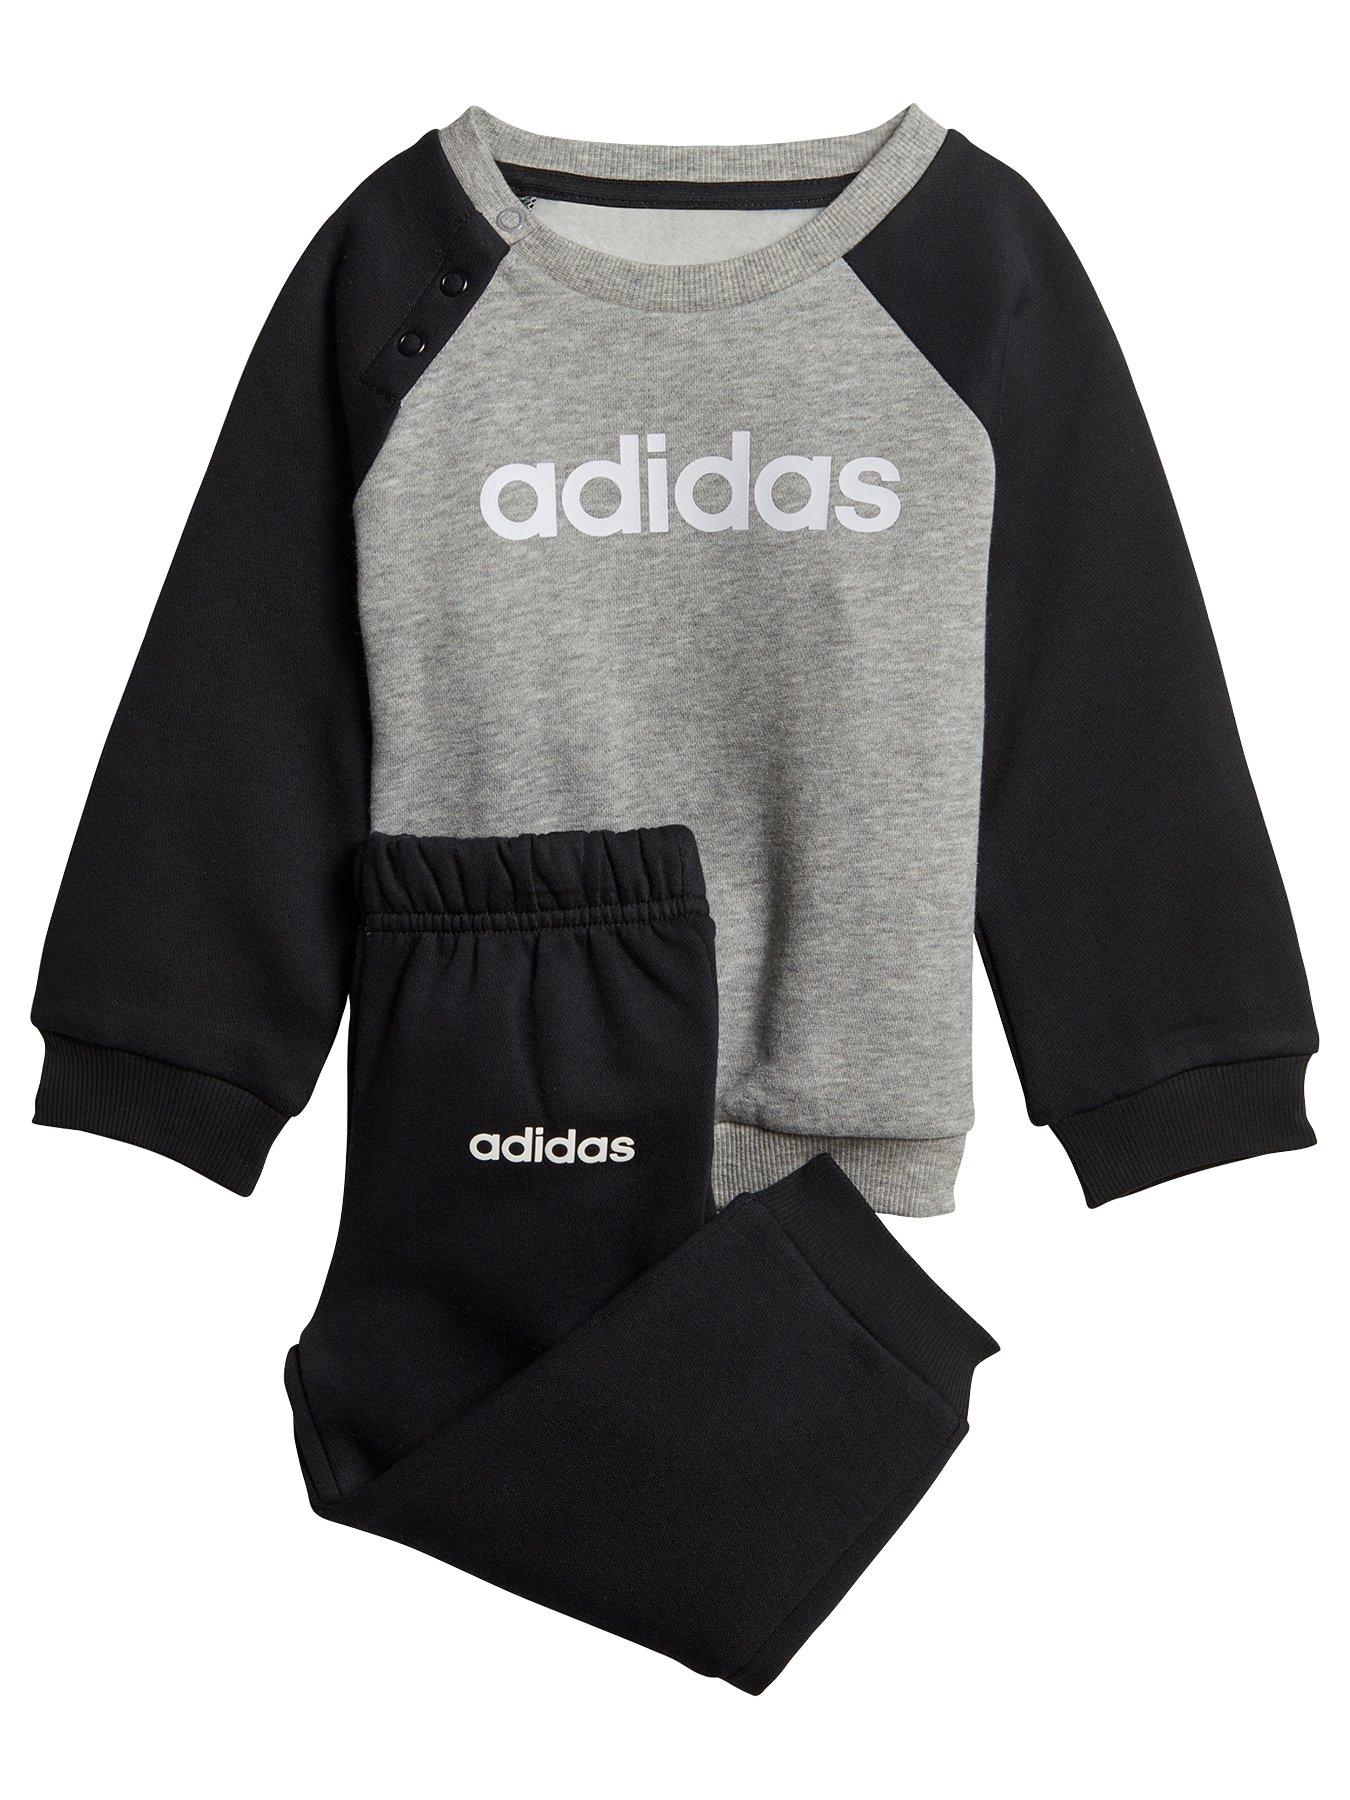 adidas newborn set